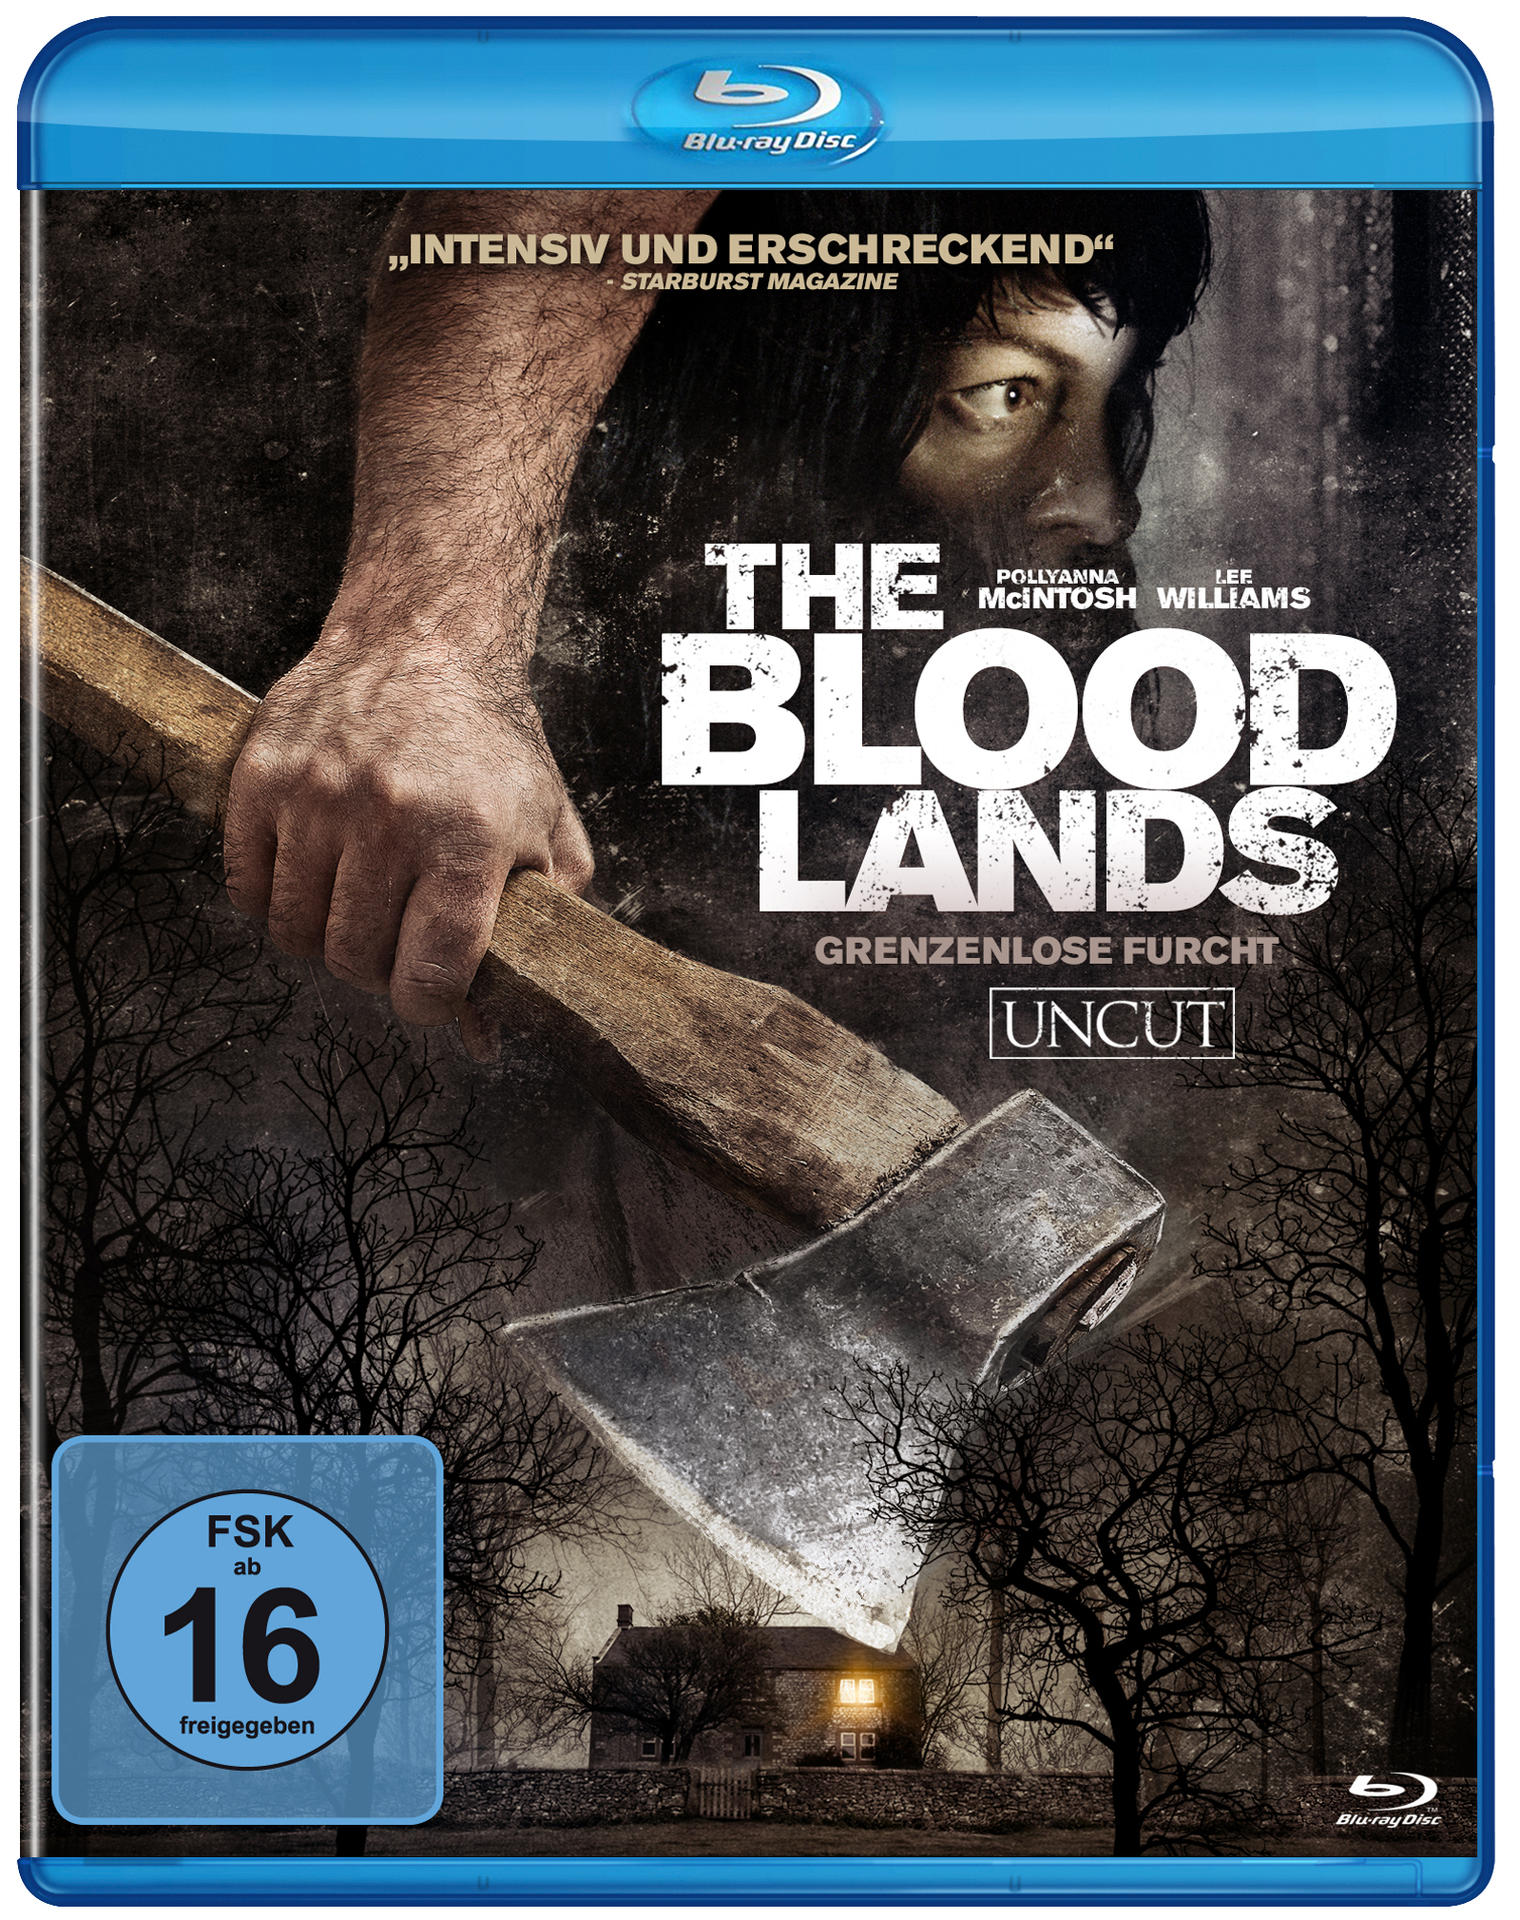 The Blu-ray Lands-Grenzenlose Furcht Blood